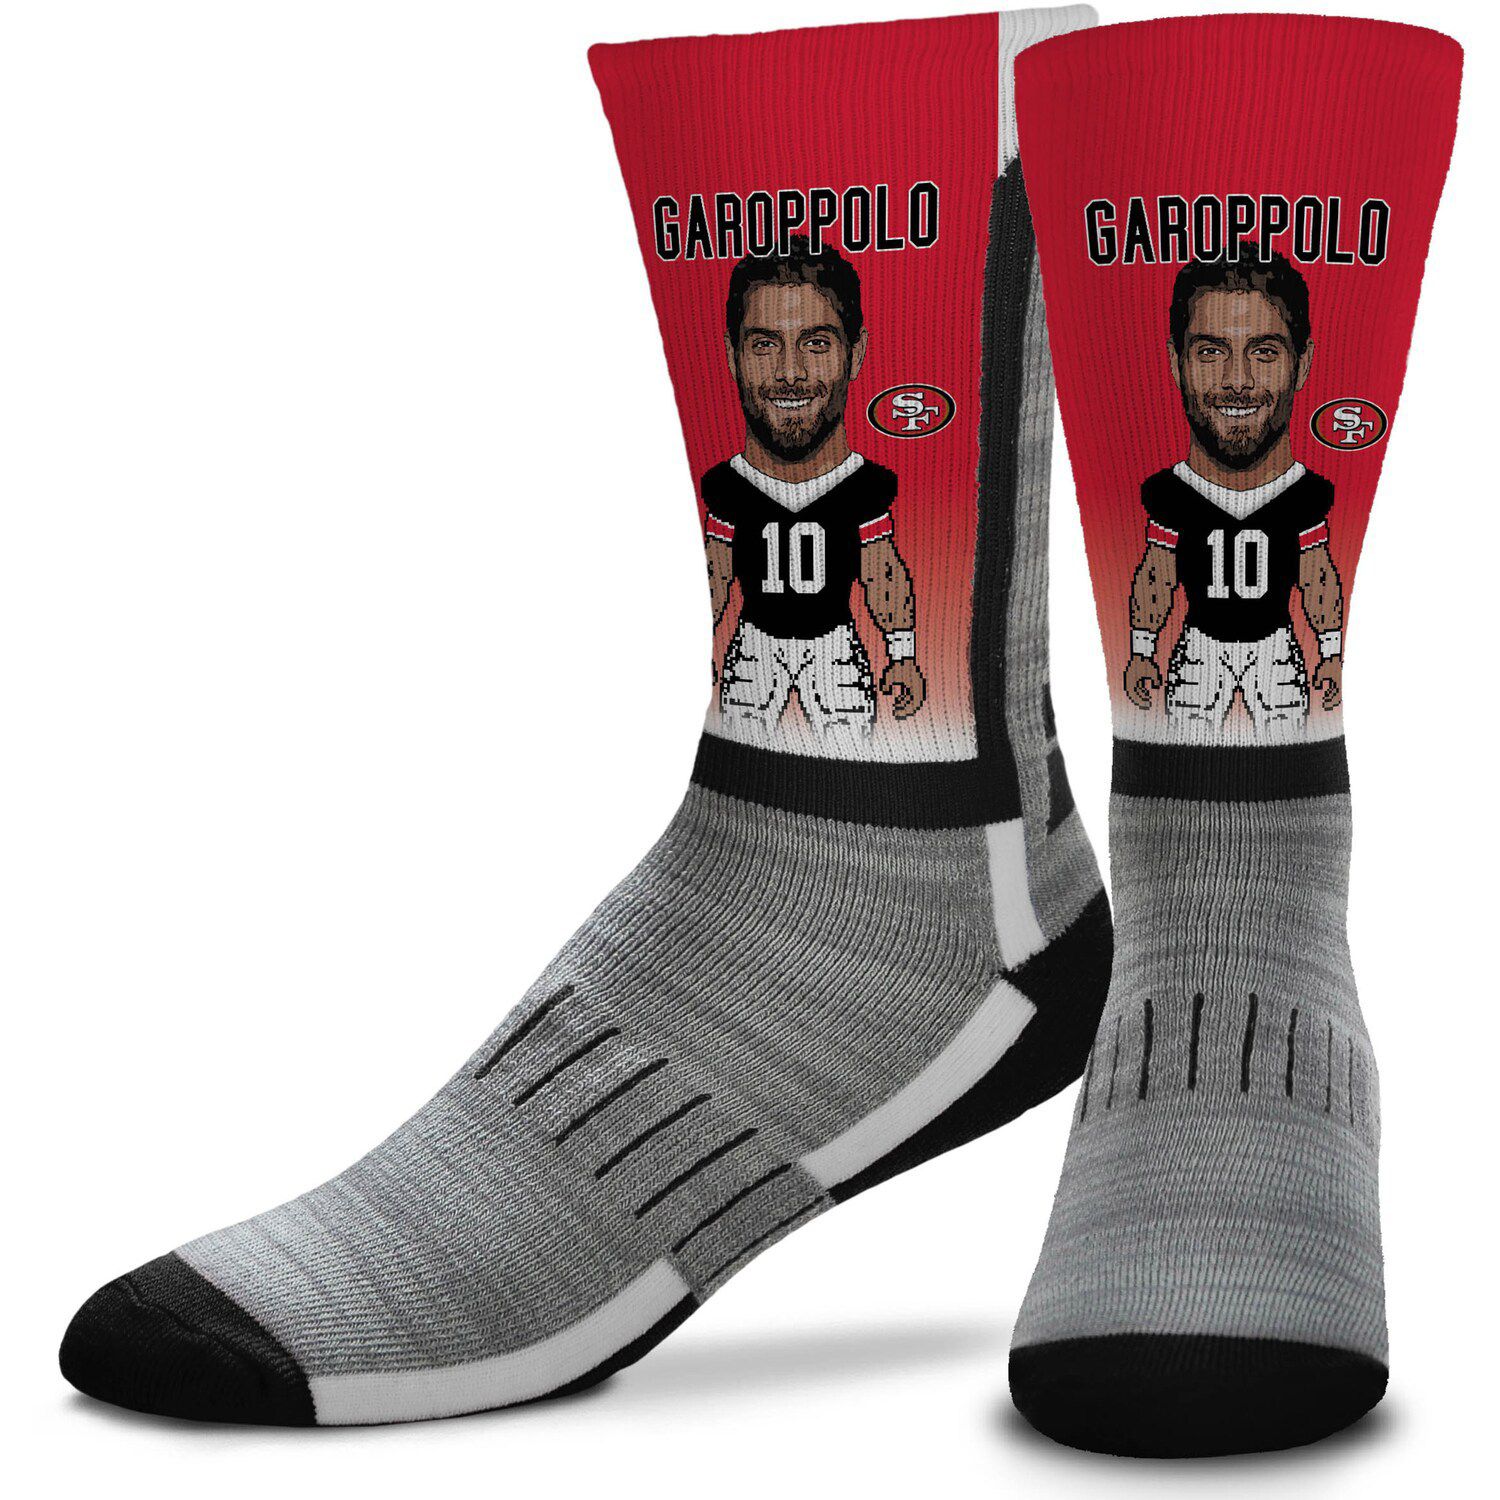 Image for Unbranded For Bare Feet Jimmy Garoppolo San Francisco 49ers MVP Crew Socks at Kohl's.